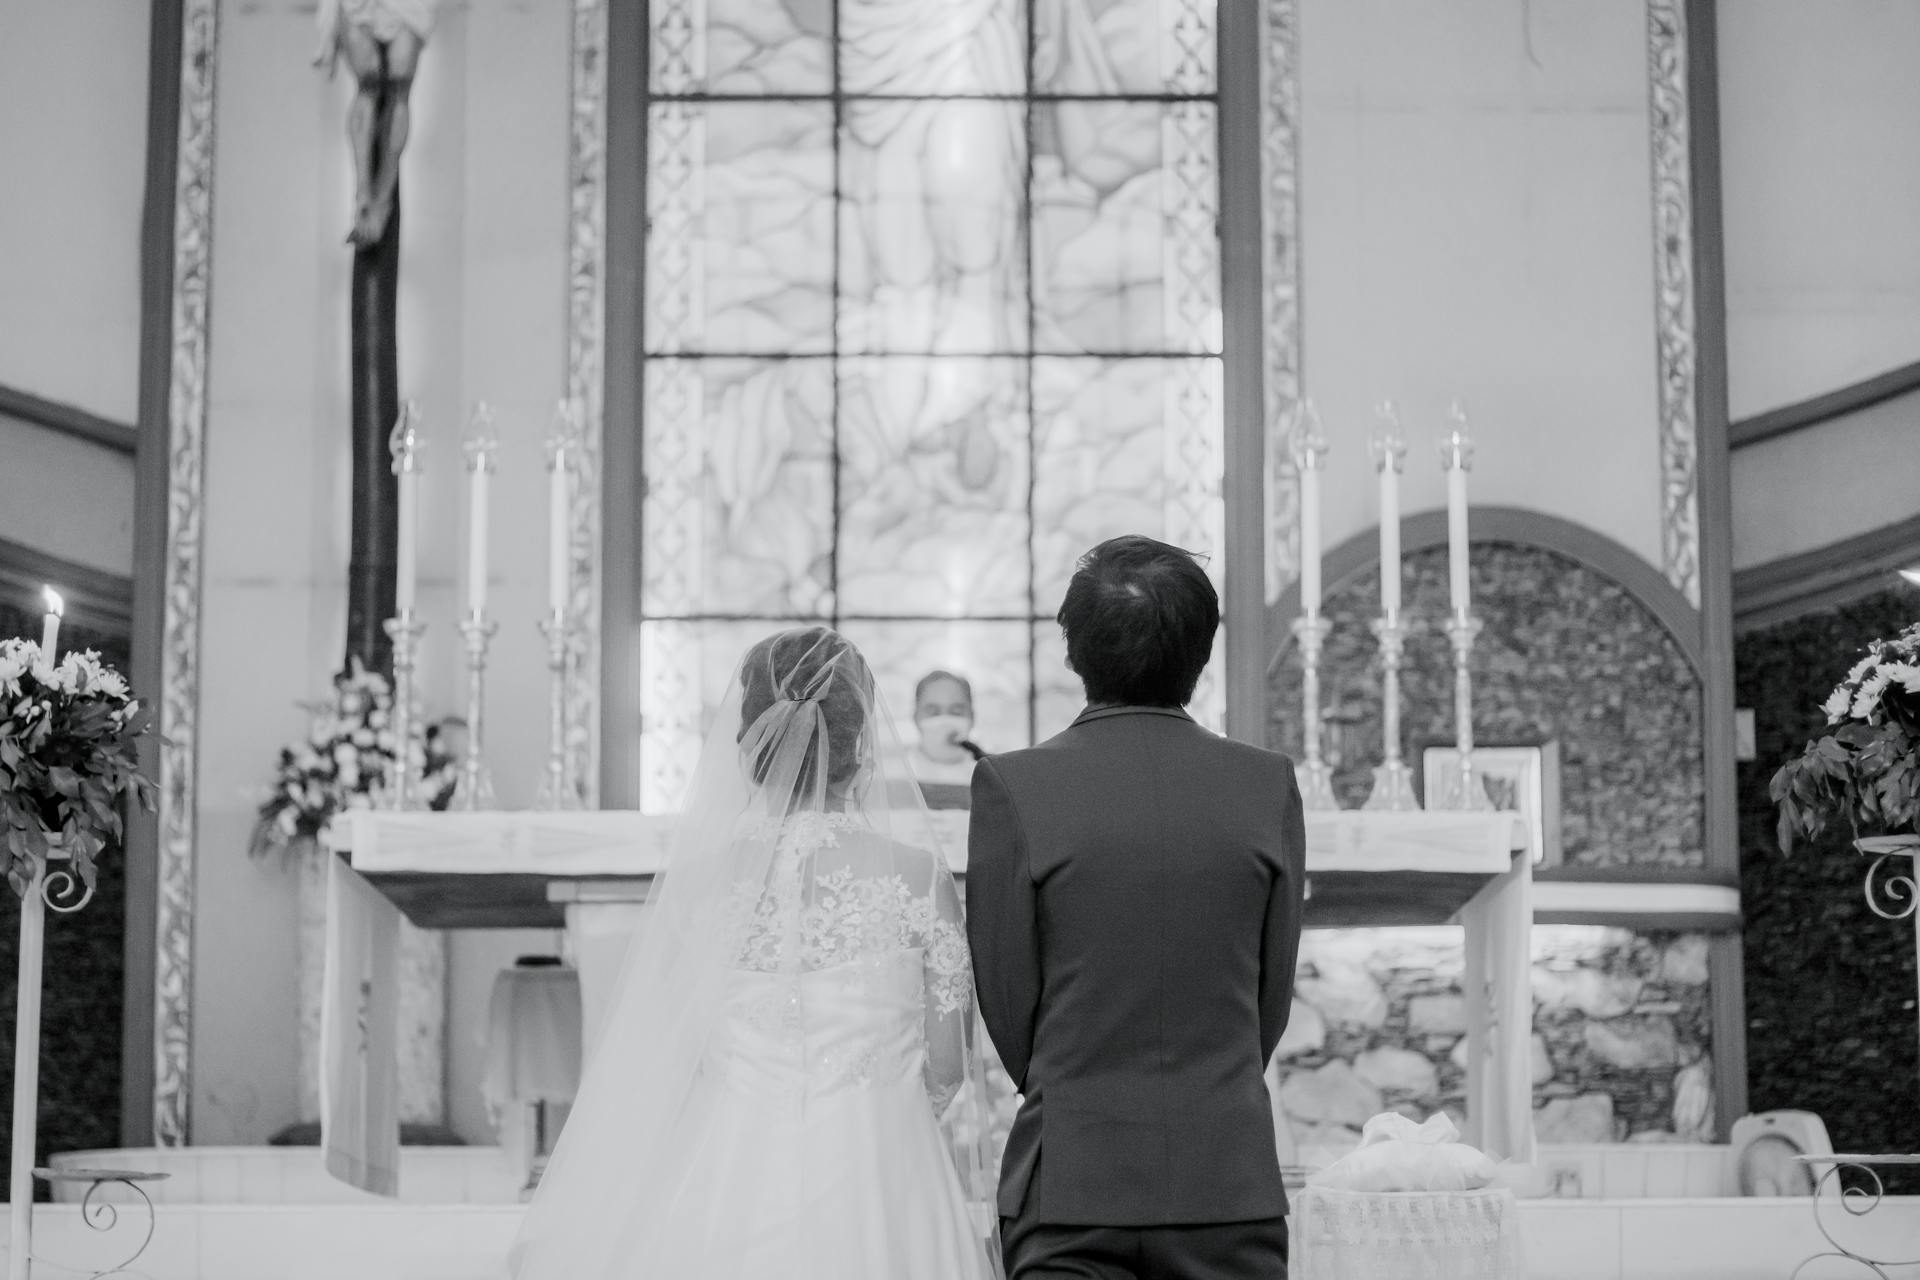 La mariée et le marié devant l'autel | Source : Pexels